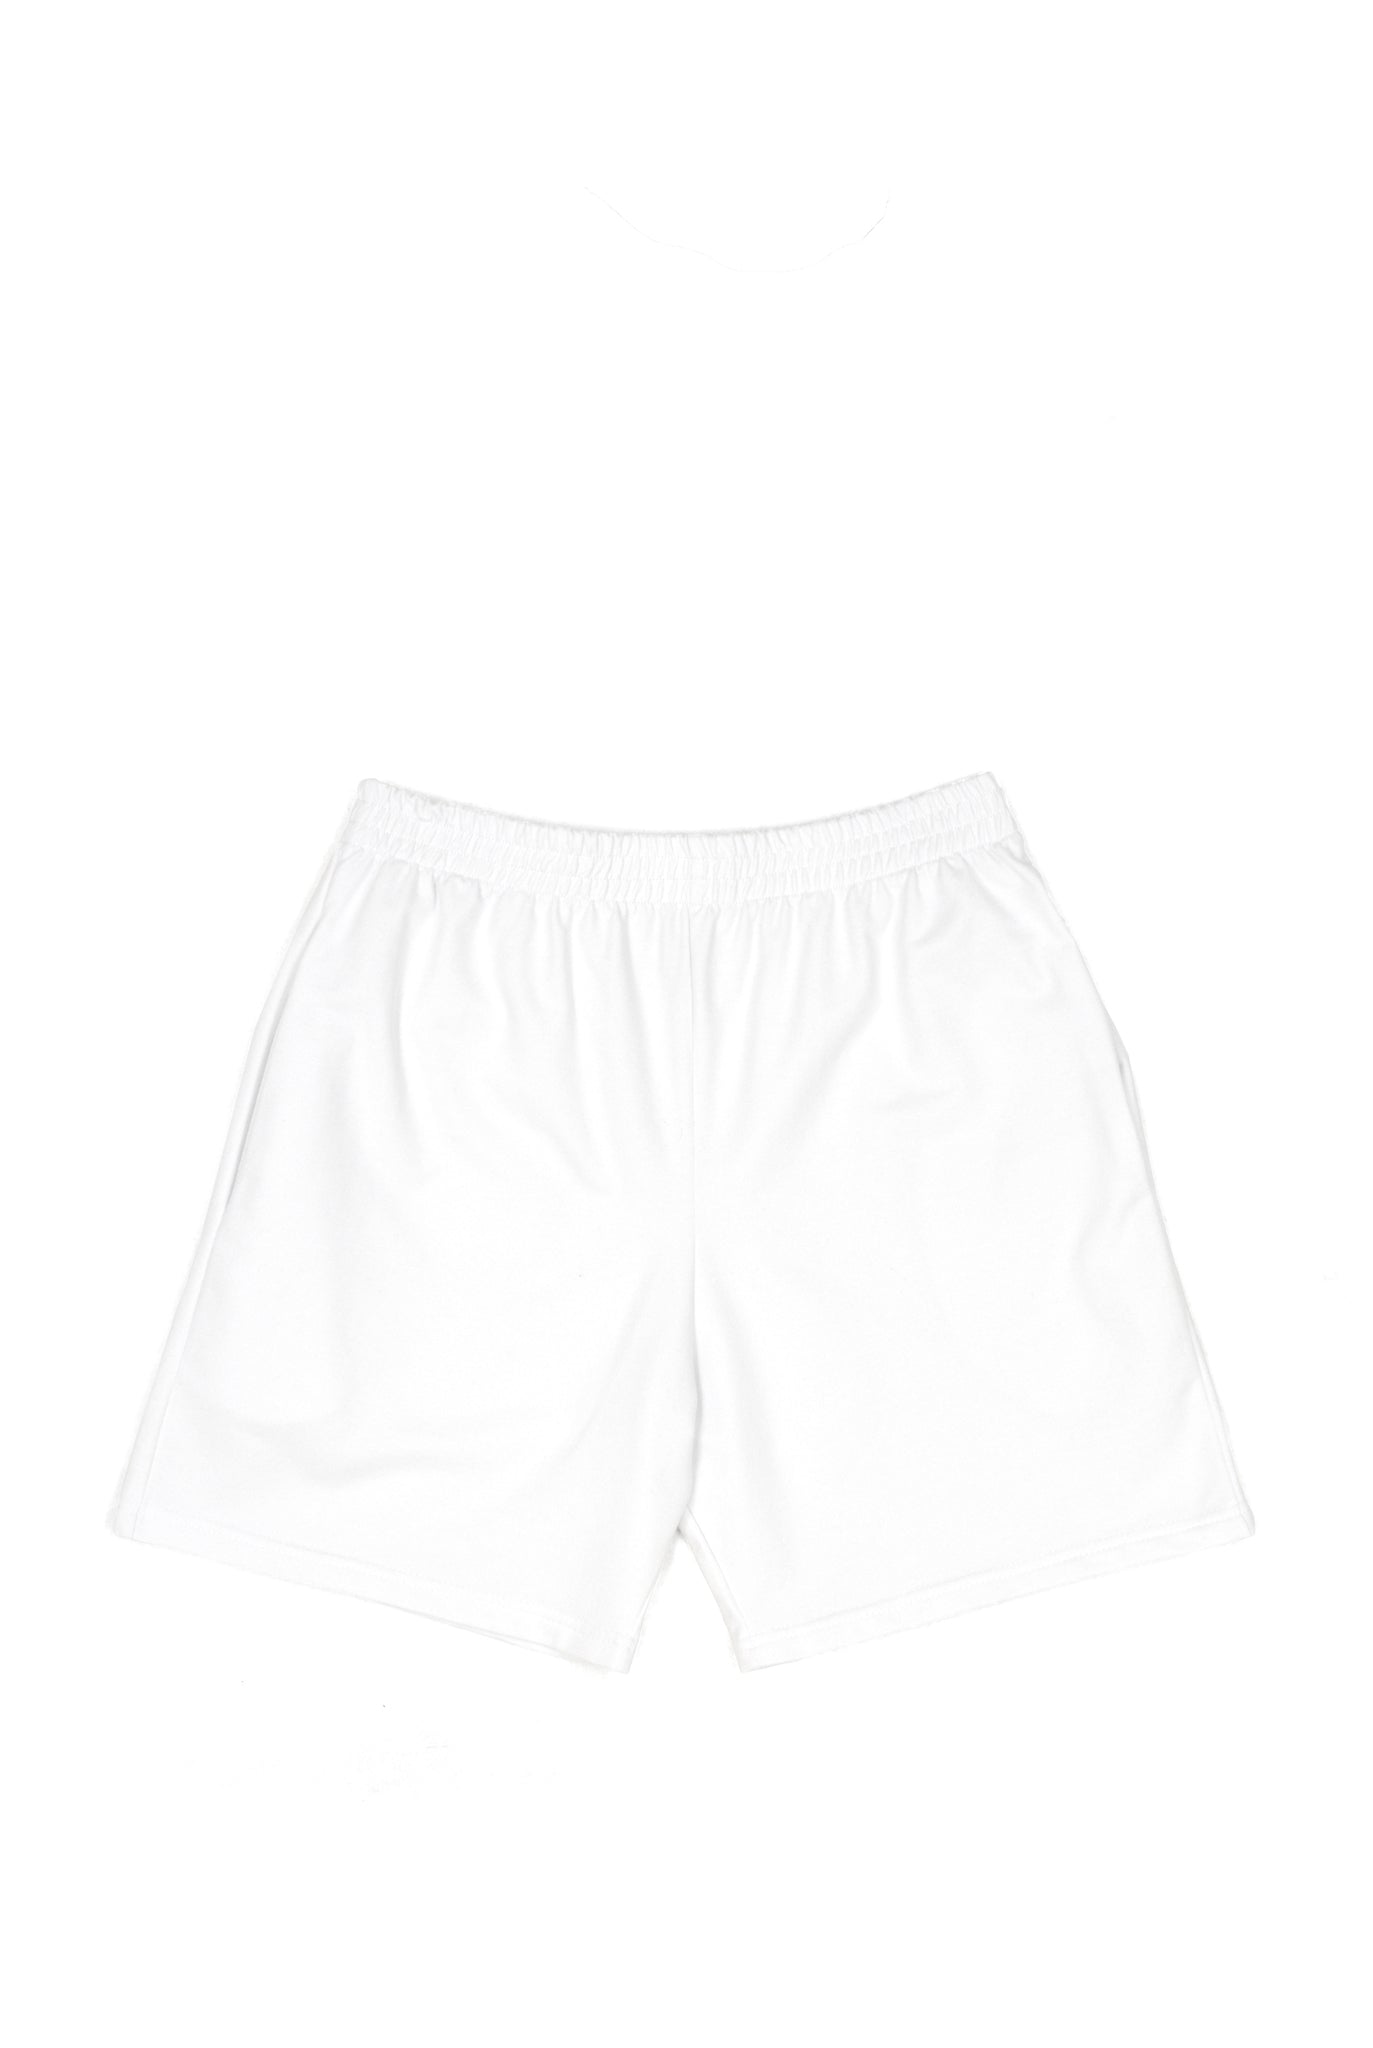 SOOP SOOP Basic Shorts, White